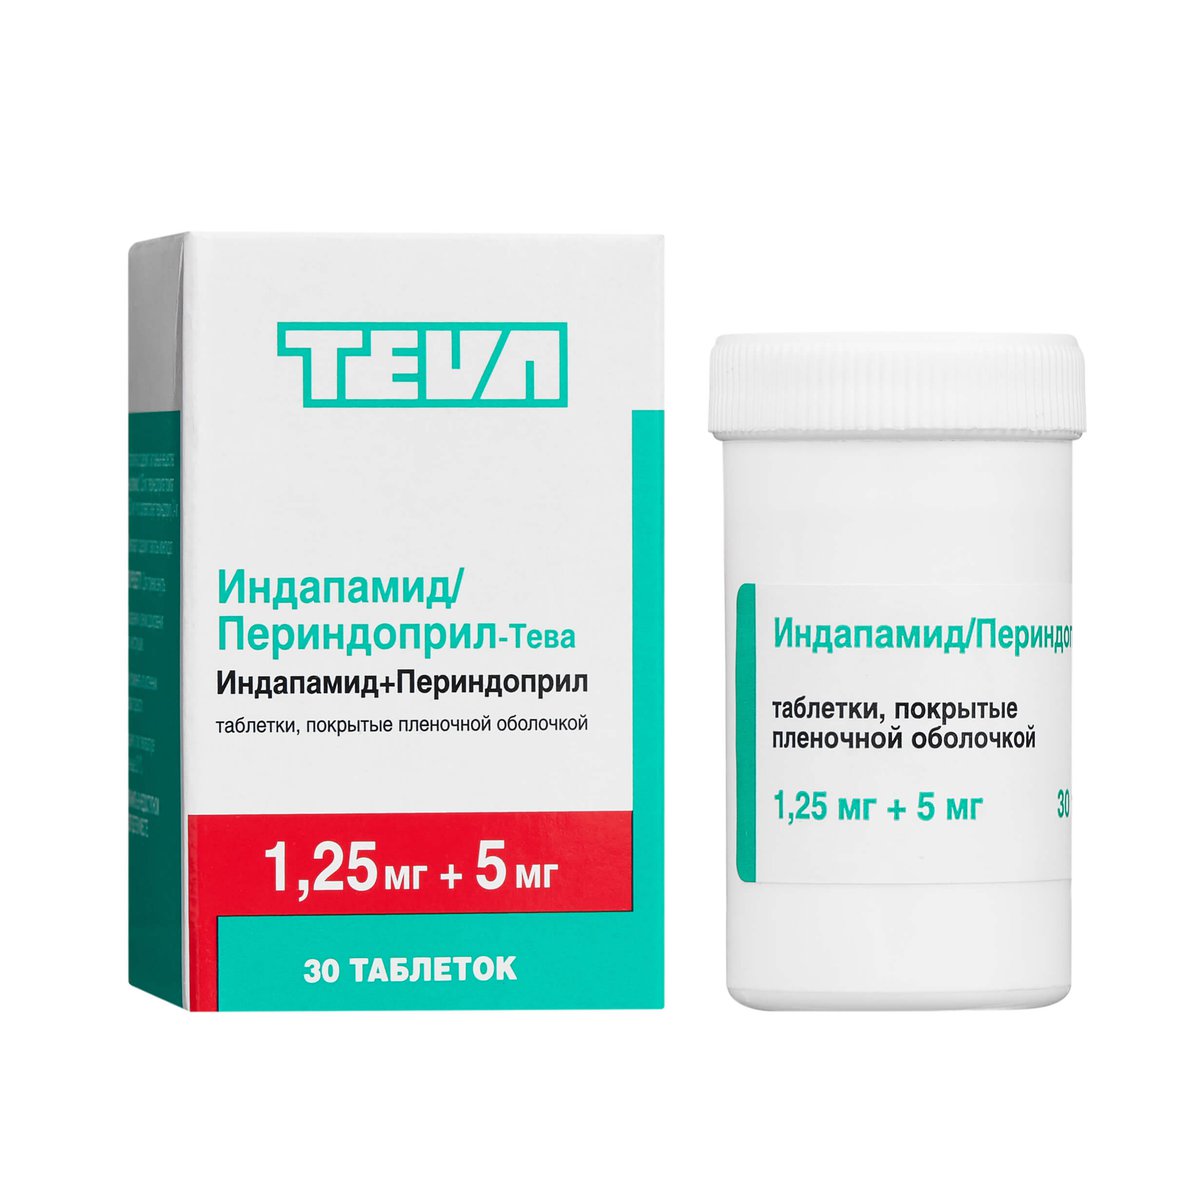 Индапамид/Периндоприл-Тева (таблетки, 30 шт, 1,25+5 мг) - цена,  .